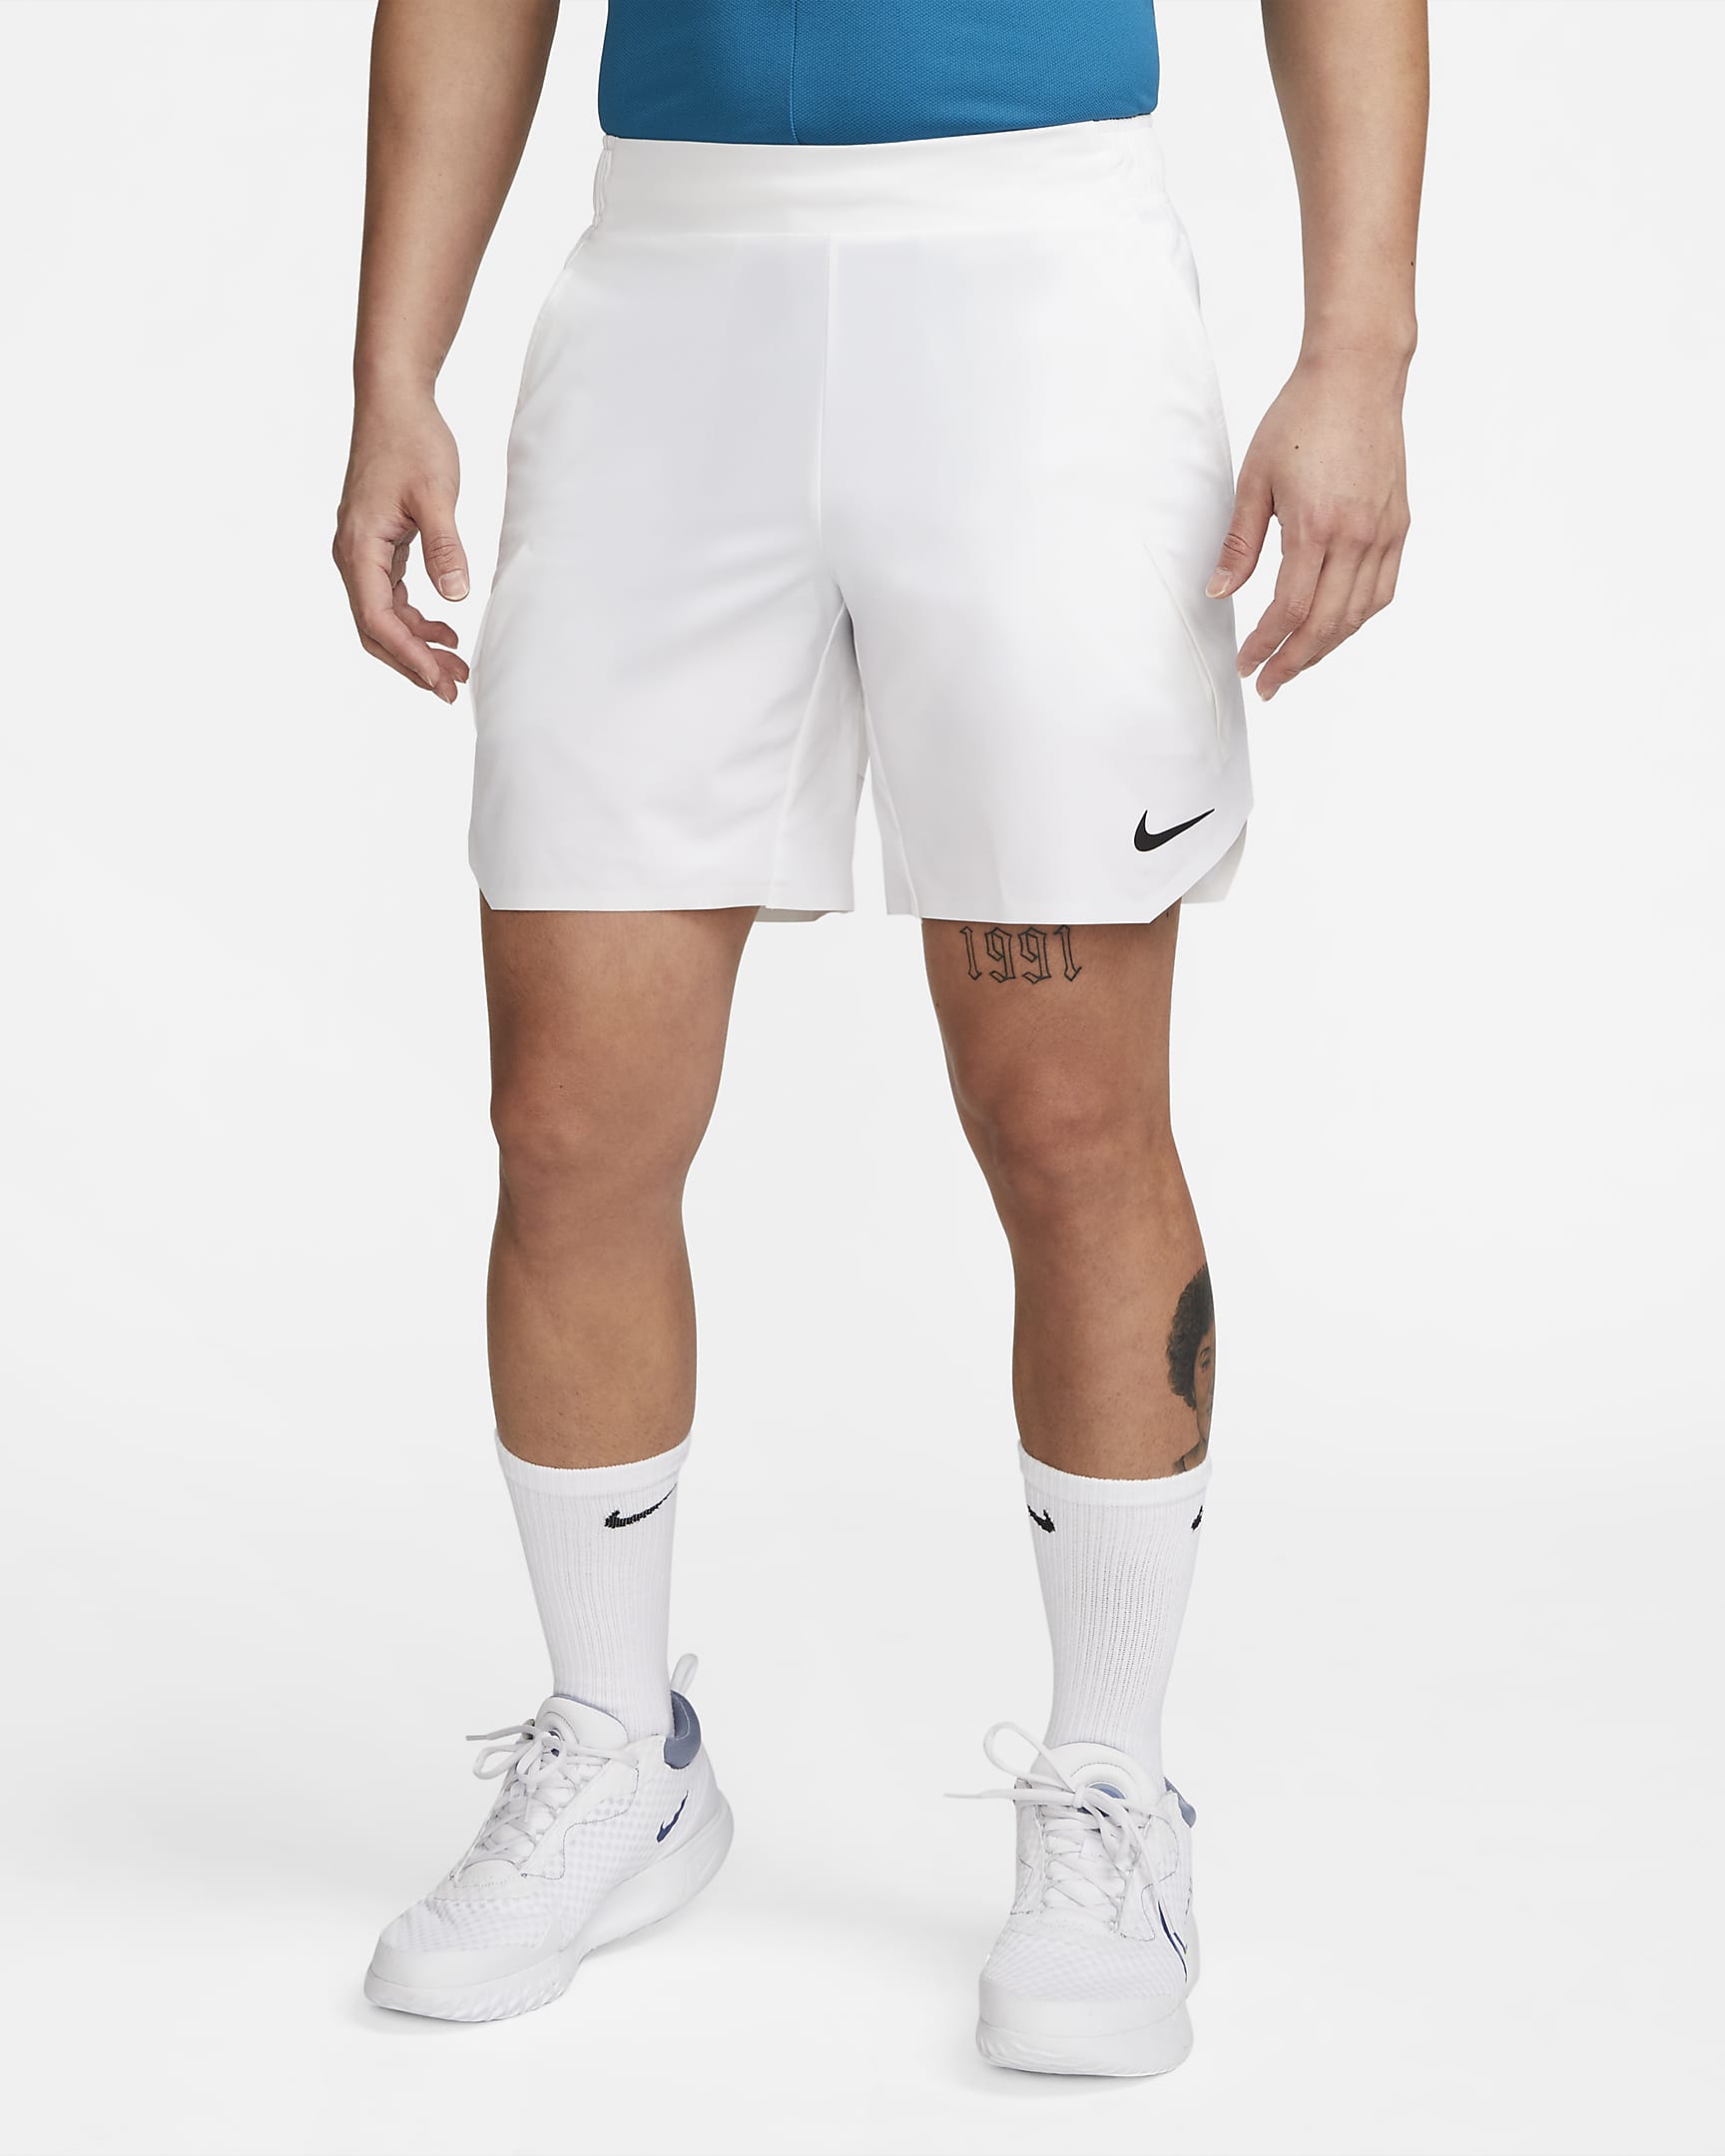 NikeCourt Dri-FIT Slam Men's Tennis Shorts. Nike SG